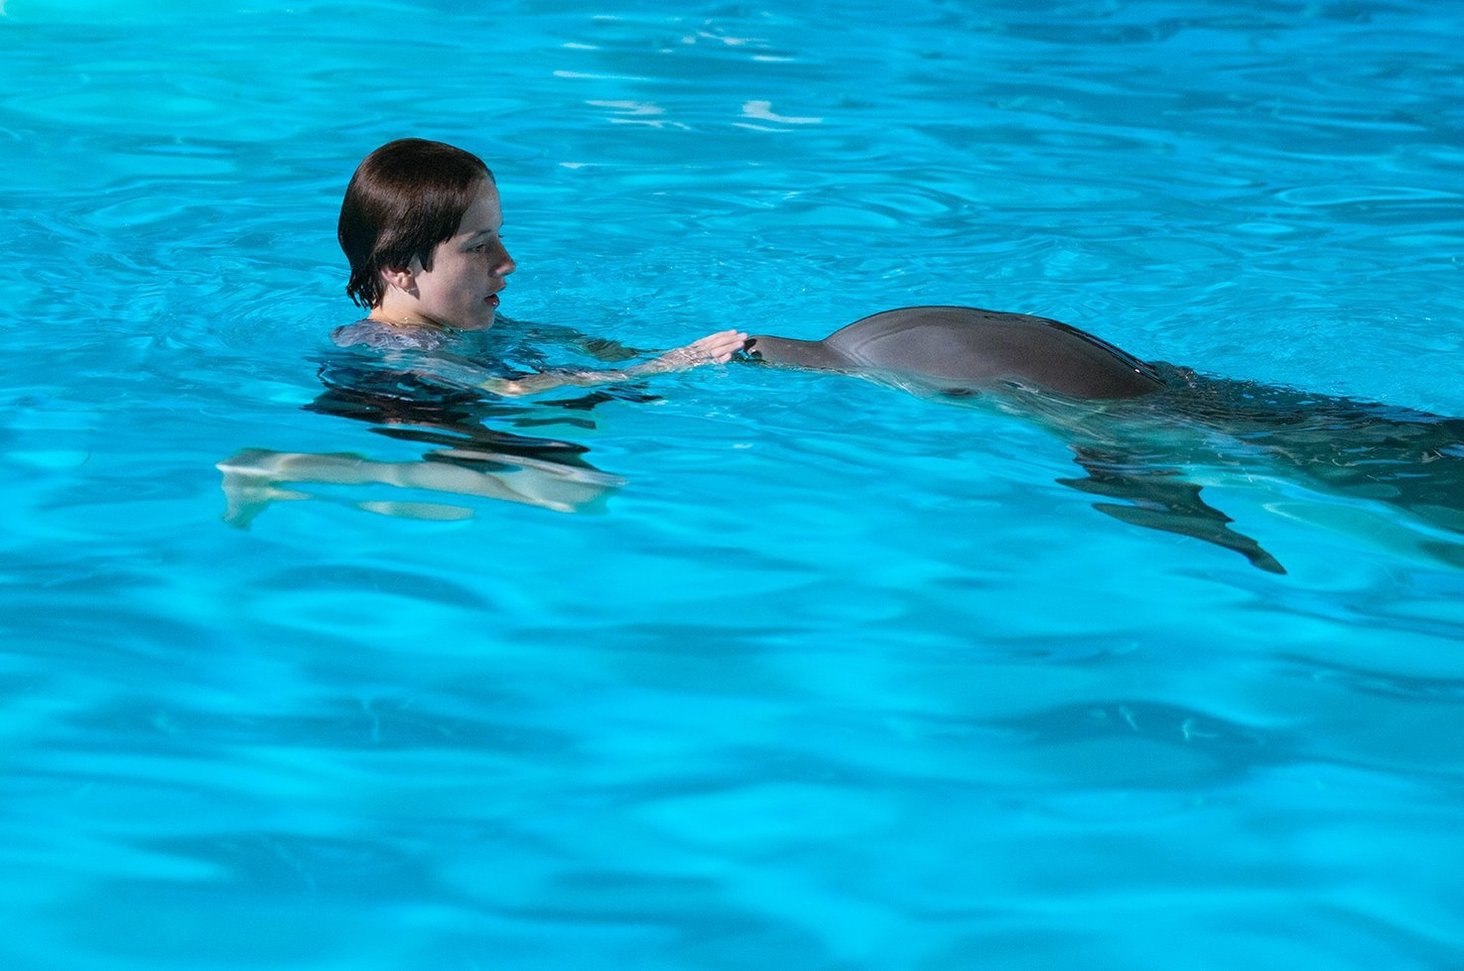 Дельфин 2 группа